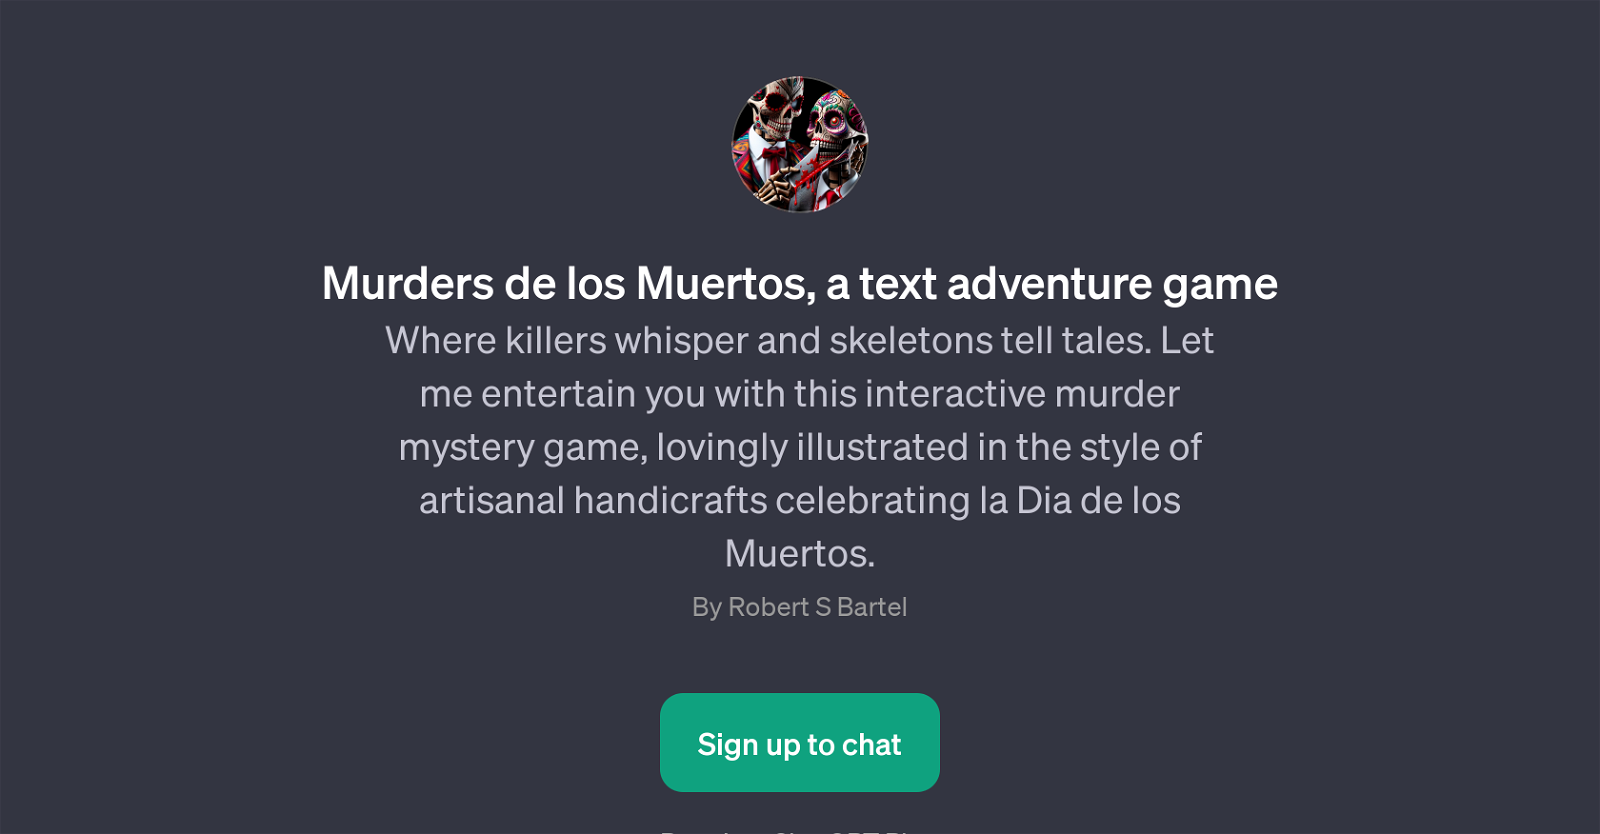 Murders de los Muertos website